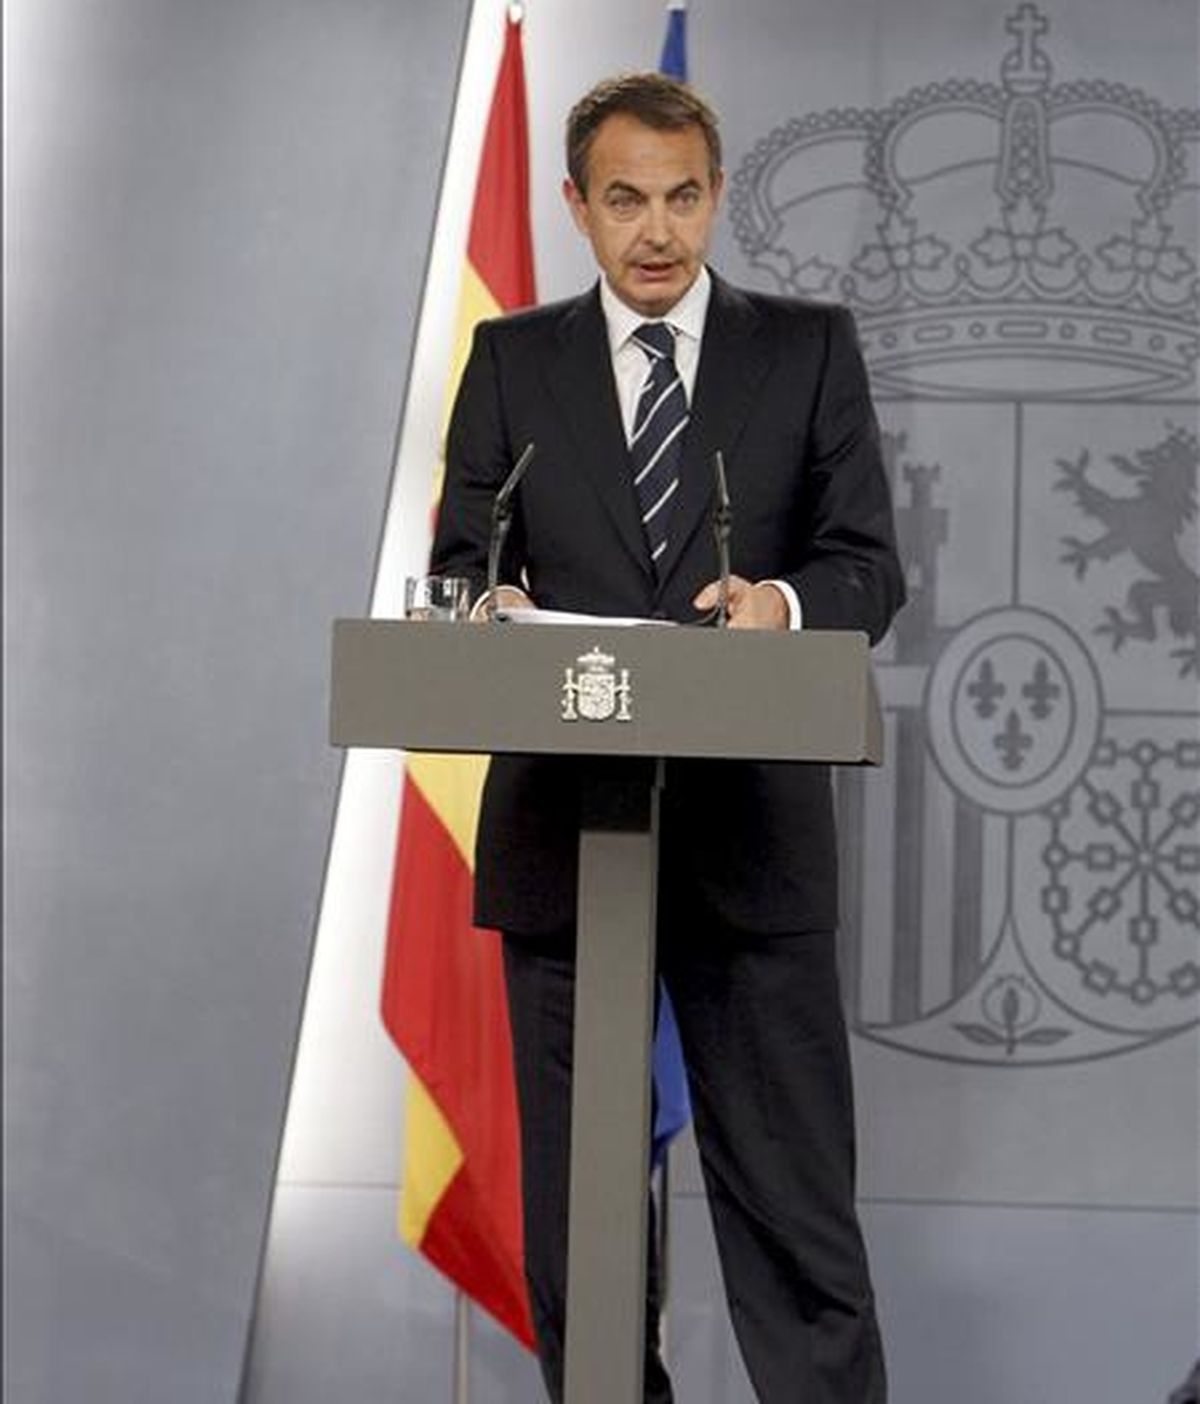 El presidente del Gobierno, José Luis Rodríguez Zapatero, durante la rueda de prensa en la que ha anunciado hoy la remodelación de su Gabinete, tras entrevistarse con el Rey Juan Carlos, para comunicarle los cambios que va a introducir en el Ejecutivo. EFE